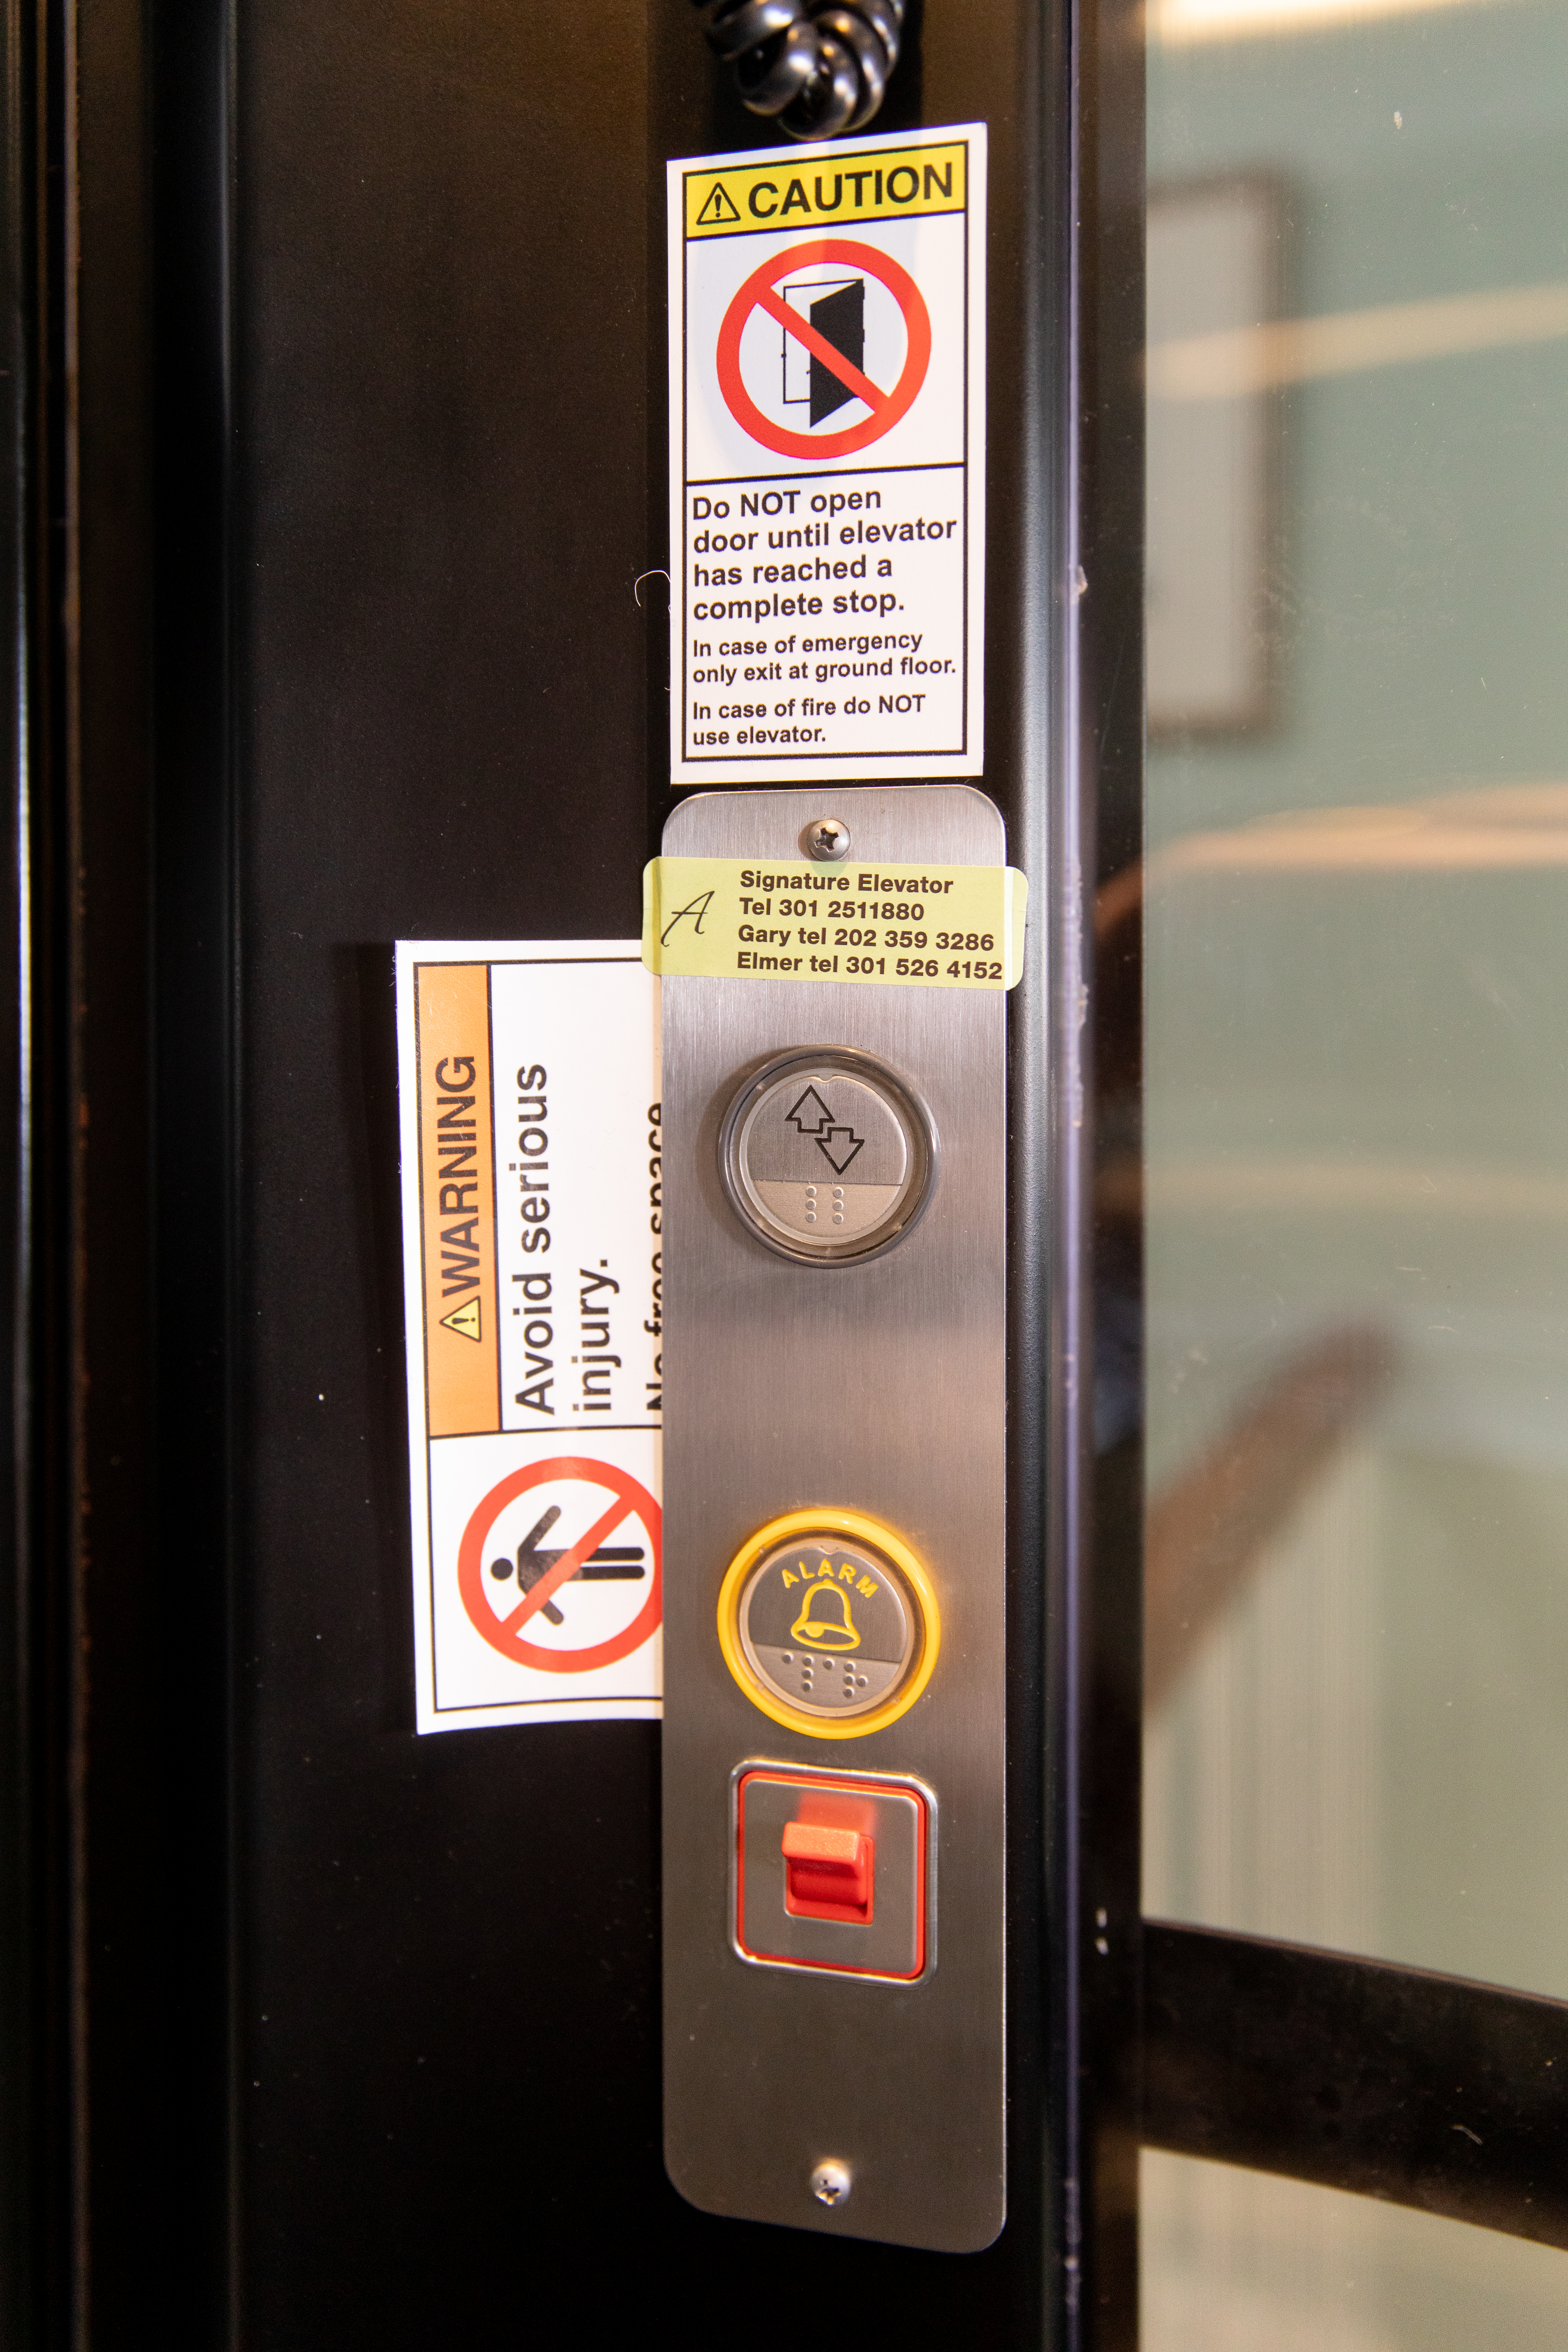 Signature Elevators & Accessible logo